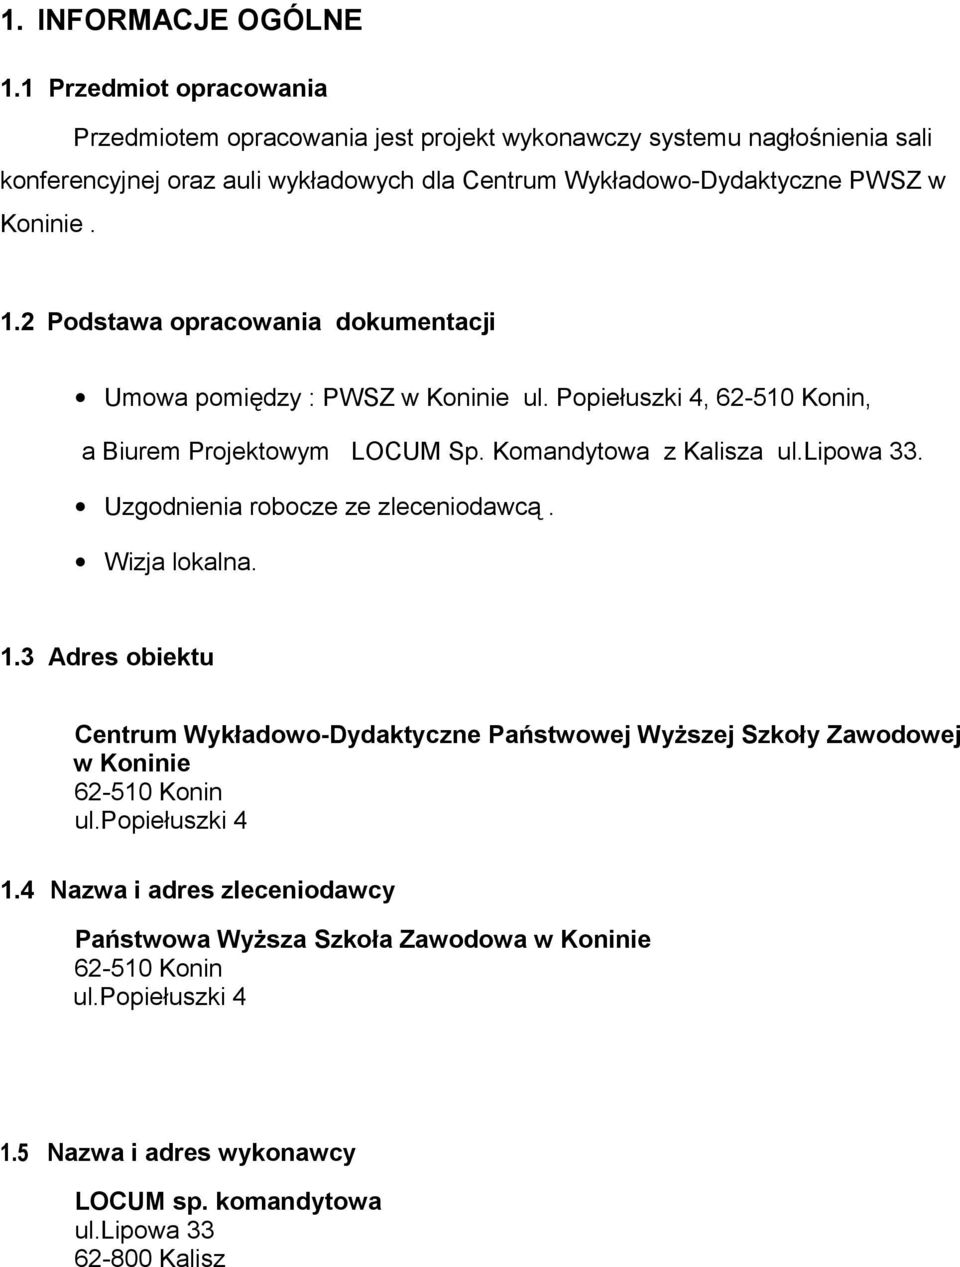 1.2 Podstawa opracowania dokumentacji Umowa pomiędzy : PWSZ w Koninie ul. Popiełuszki 4, 62-510 Konin, a Biurem Projektowym LOCUM Sp. Komandytowa z Kalisza ul.lipowa 33.